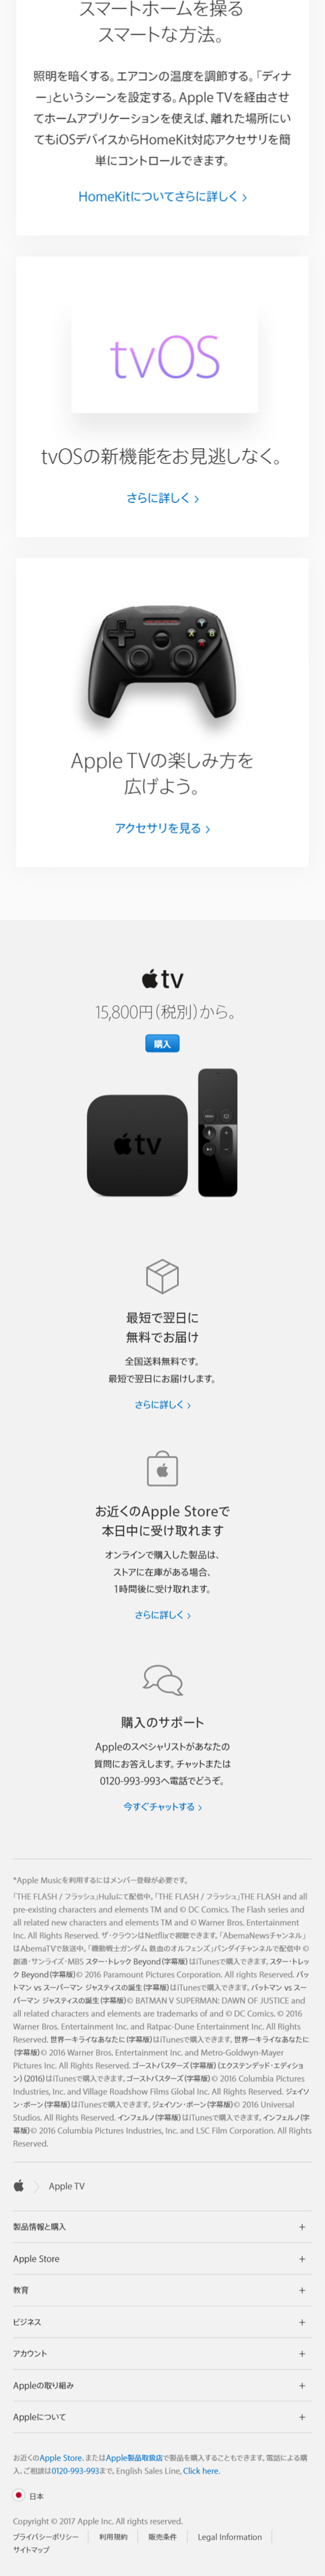 apple TV_sp_2